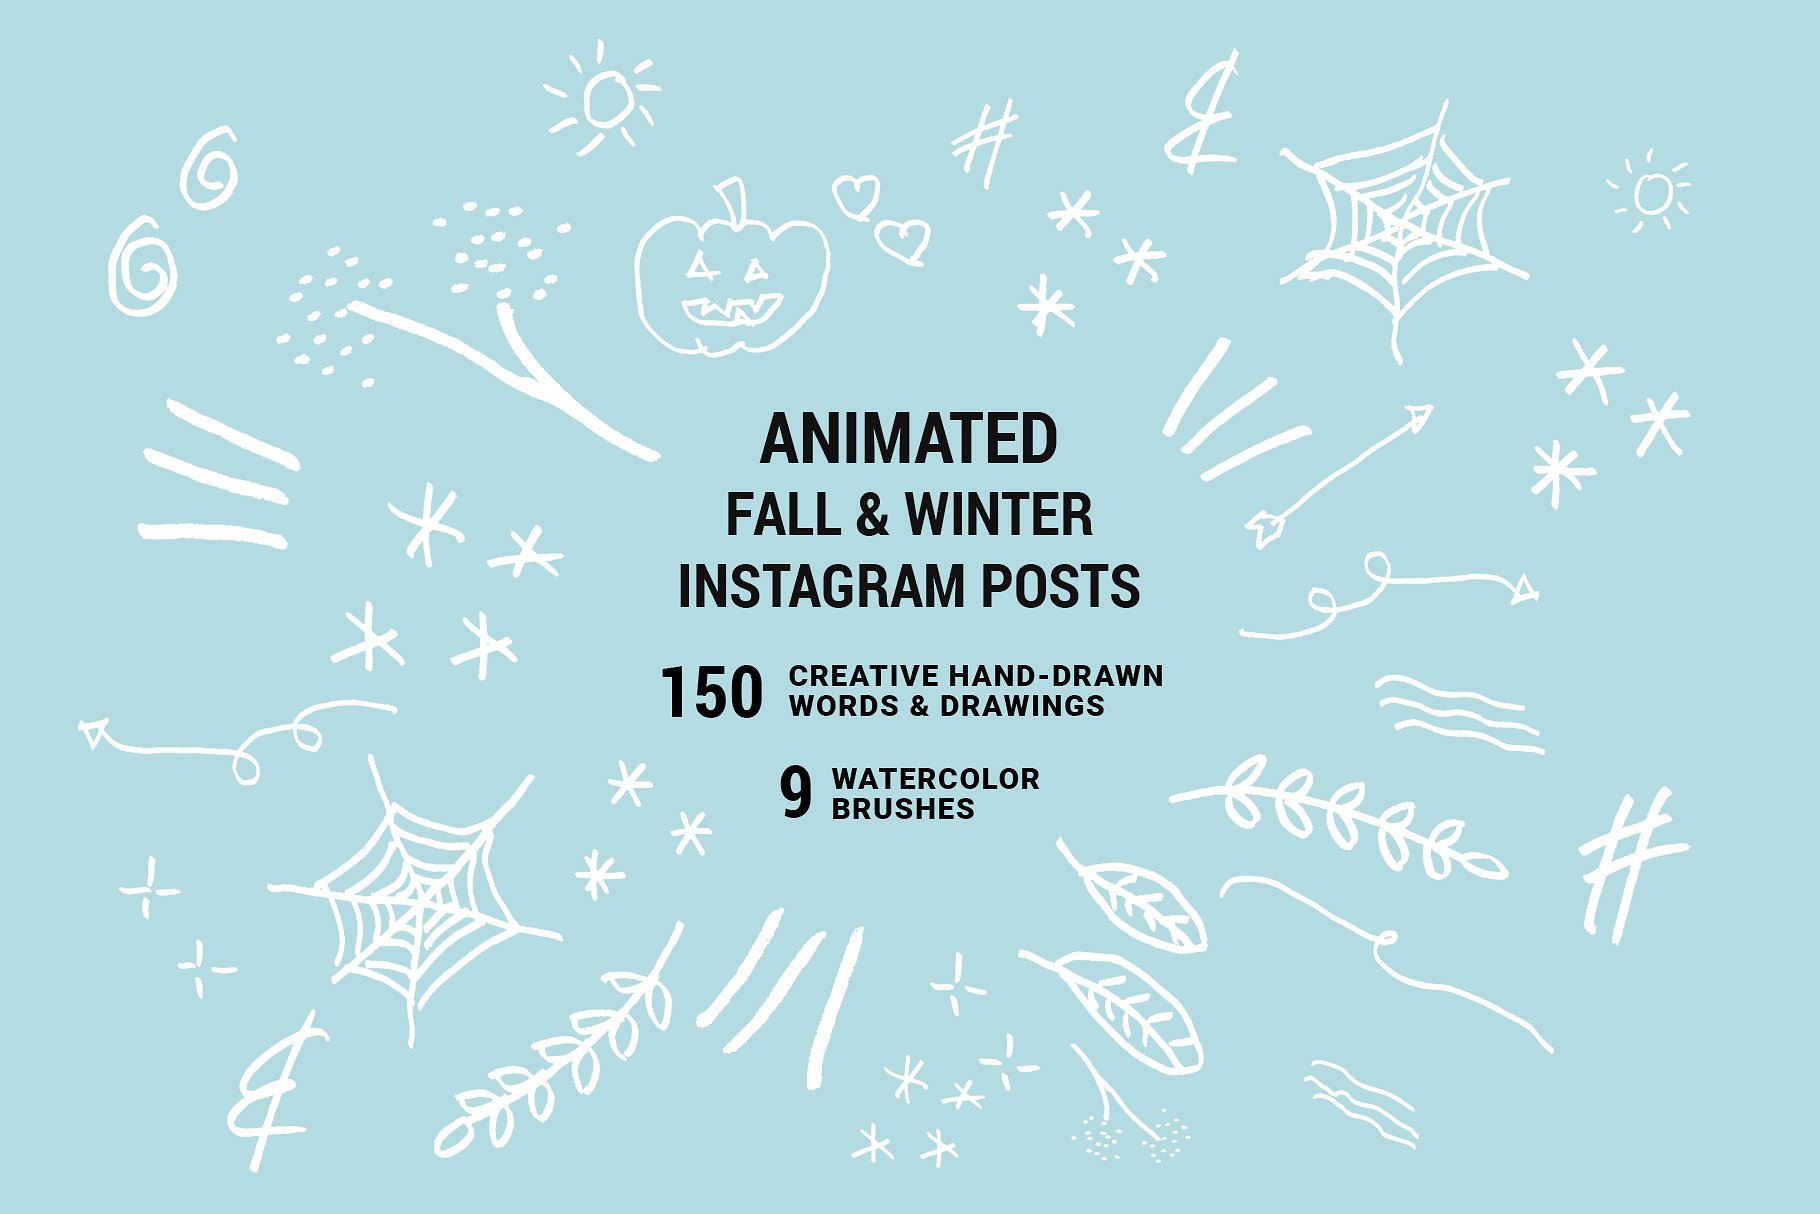 假日旅行照片Instagram模板 Holiday ANIMATED Instagram Posts插图1